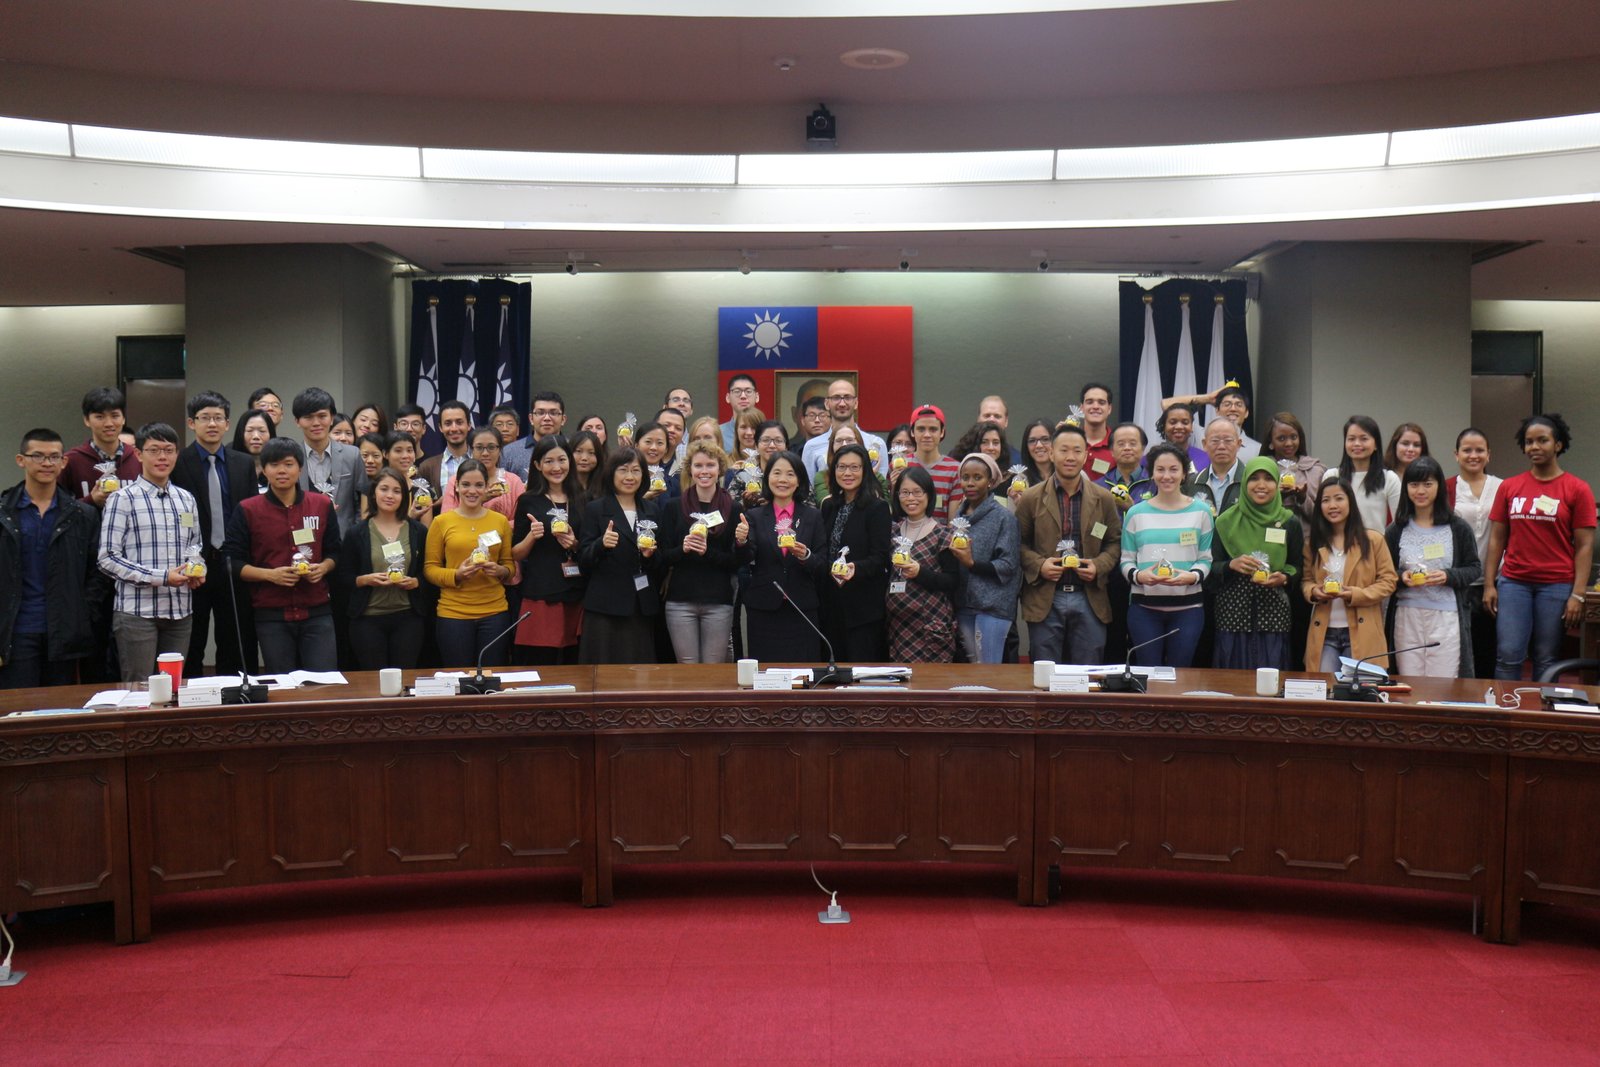 臺北市副市長周麗芳主持秘書處國際活動成果分享茶會 10國青年熱烈交流